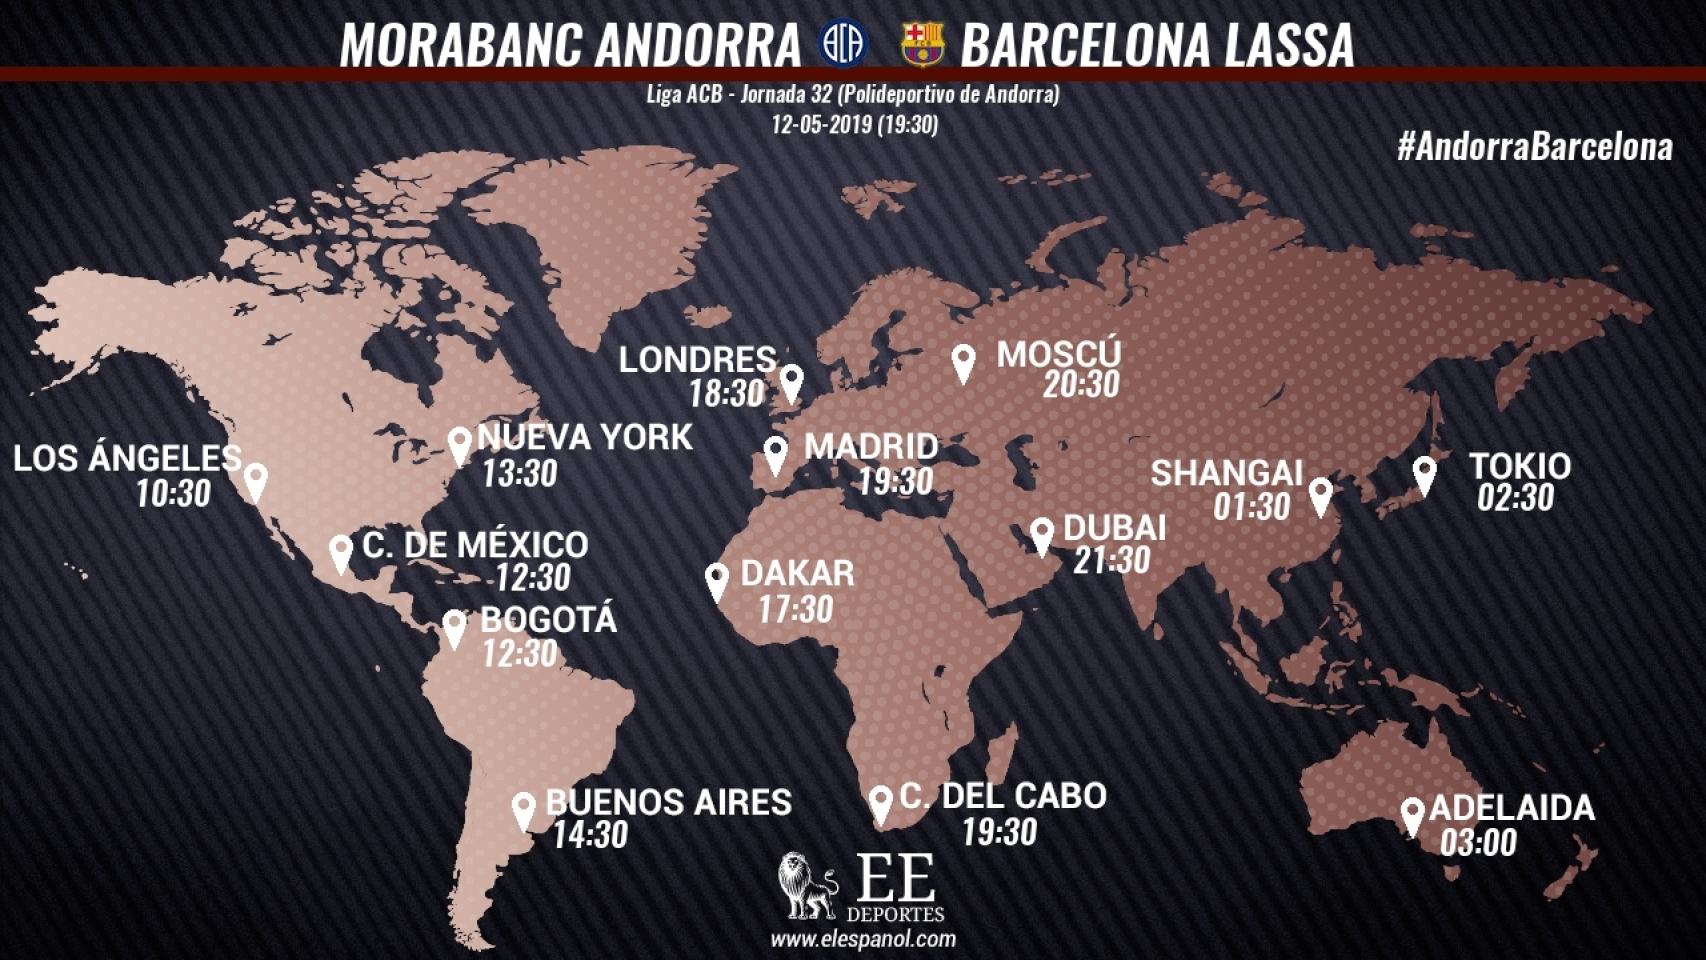 Horario internacional del MoraBanc Andorra - Barcelona Lassa